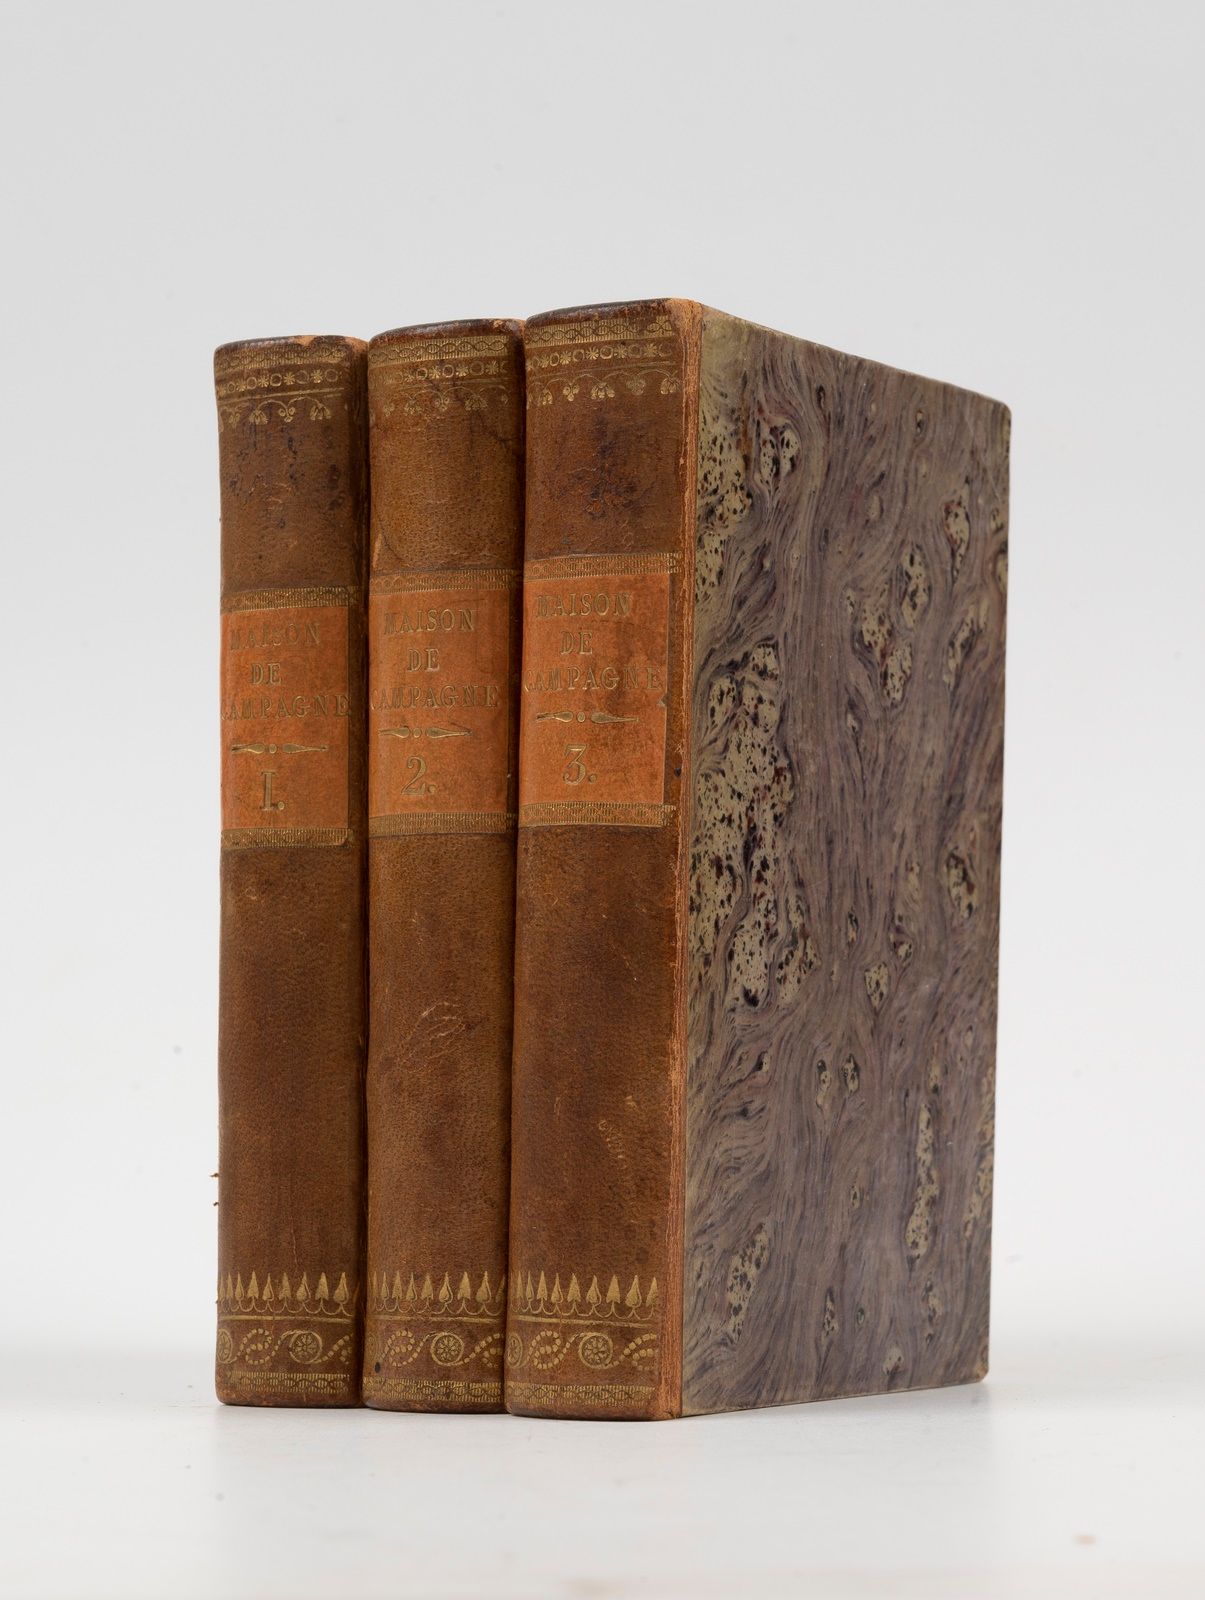 Null 阿丹森（Aglaé）。La Maison de campagne.巴黎奥多，1822年。3卷12册，半棕褐色基底，橙色标题页，光滑的书脊上有装饰。

&hellip;